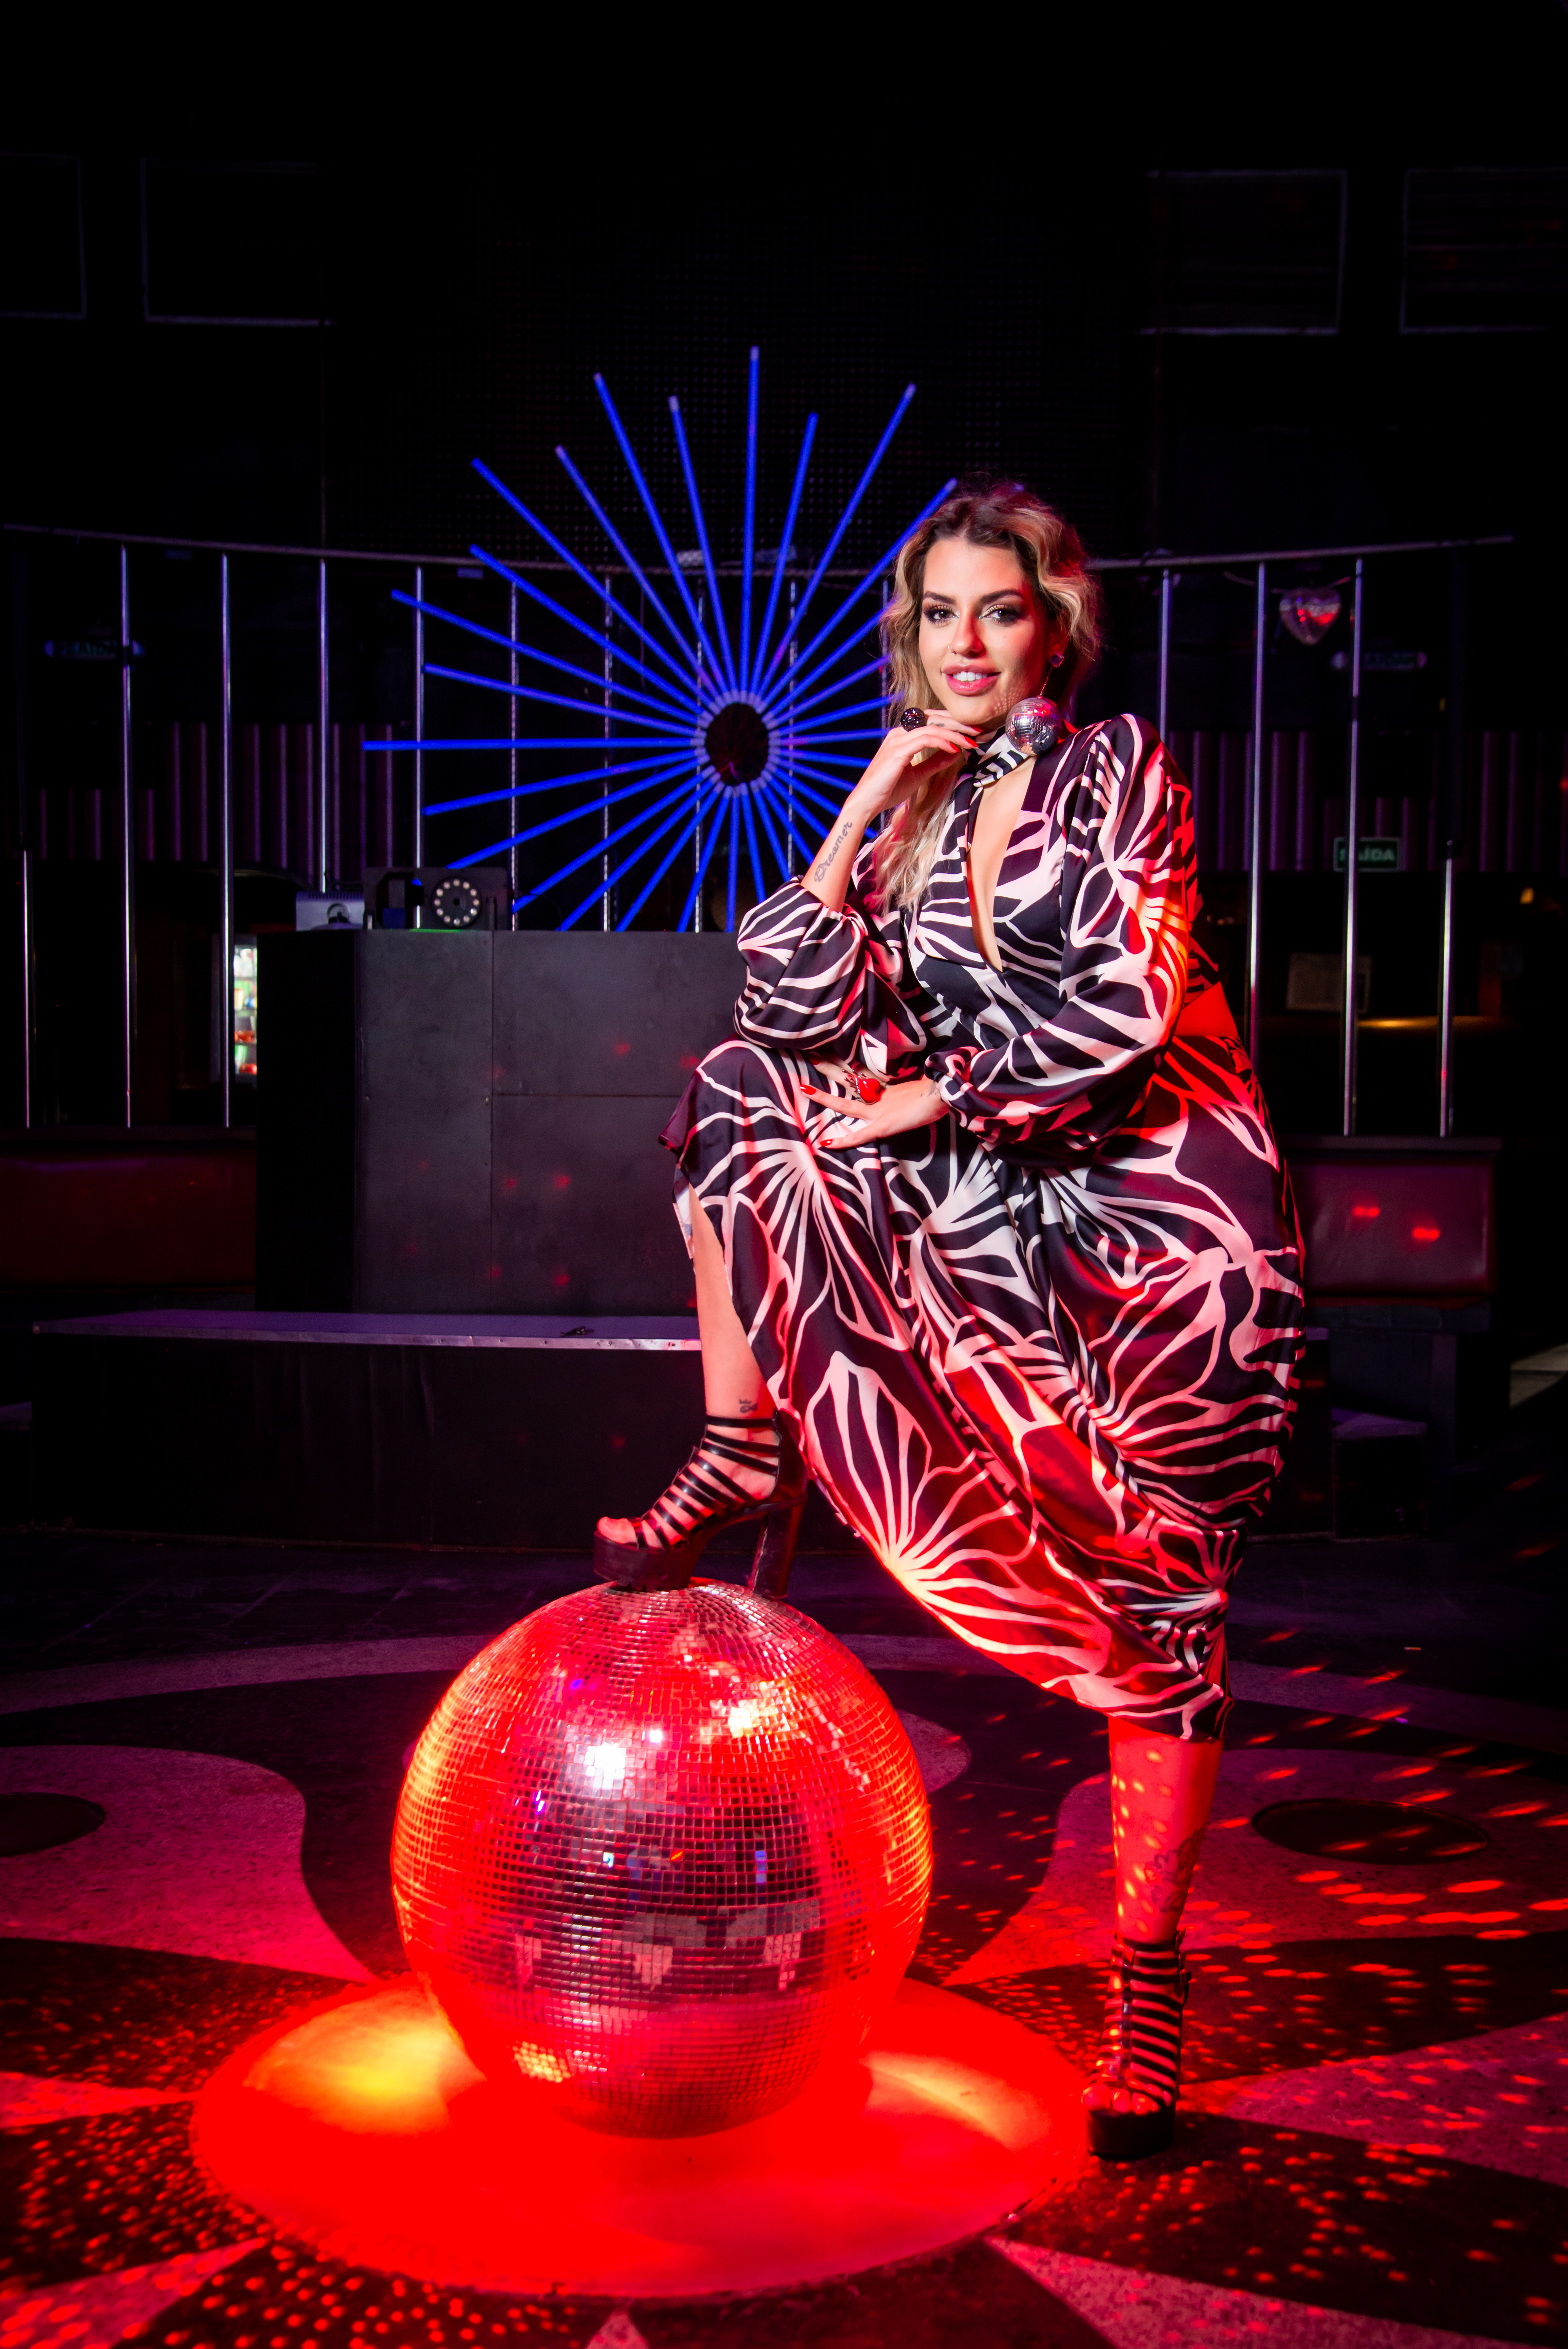 Lili Scott posa com uma perna apoiada em bola de discoteca iluminada com luz vermelha. Ela veste um longo vestido estampado e está com uma das mãos no queixo.